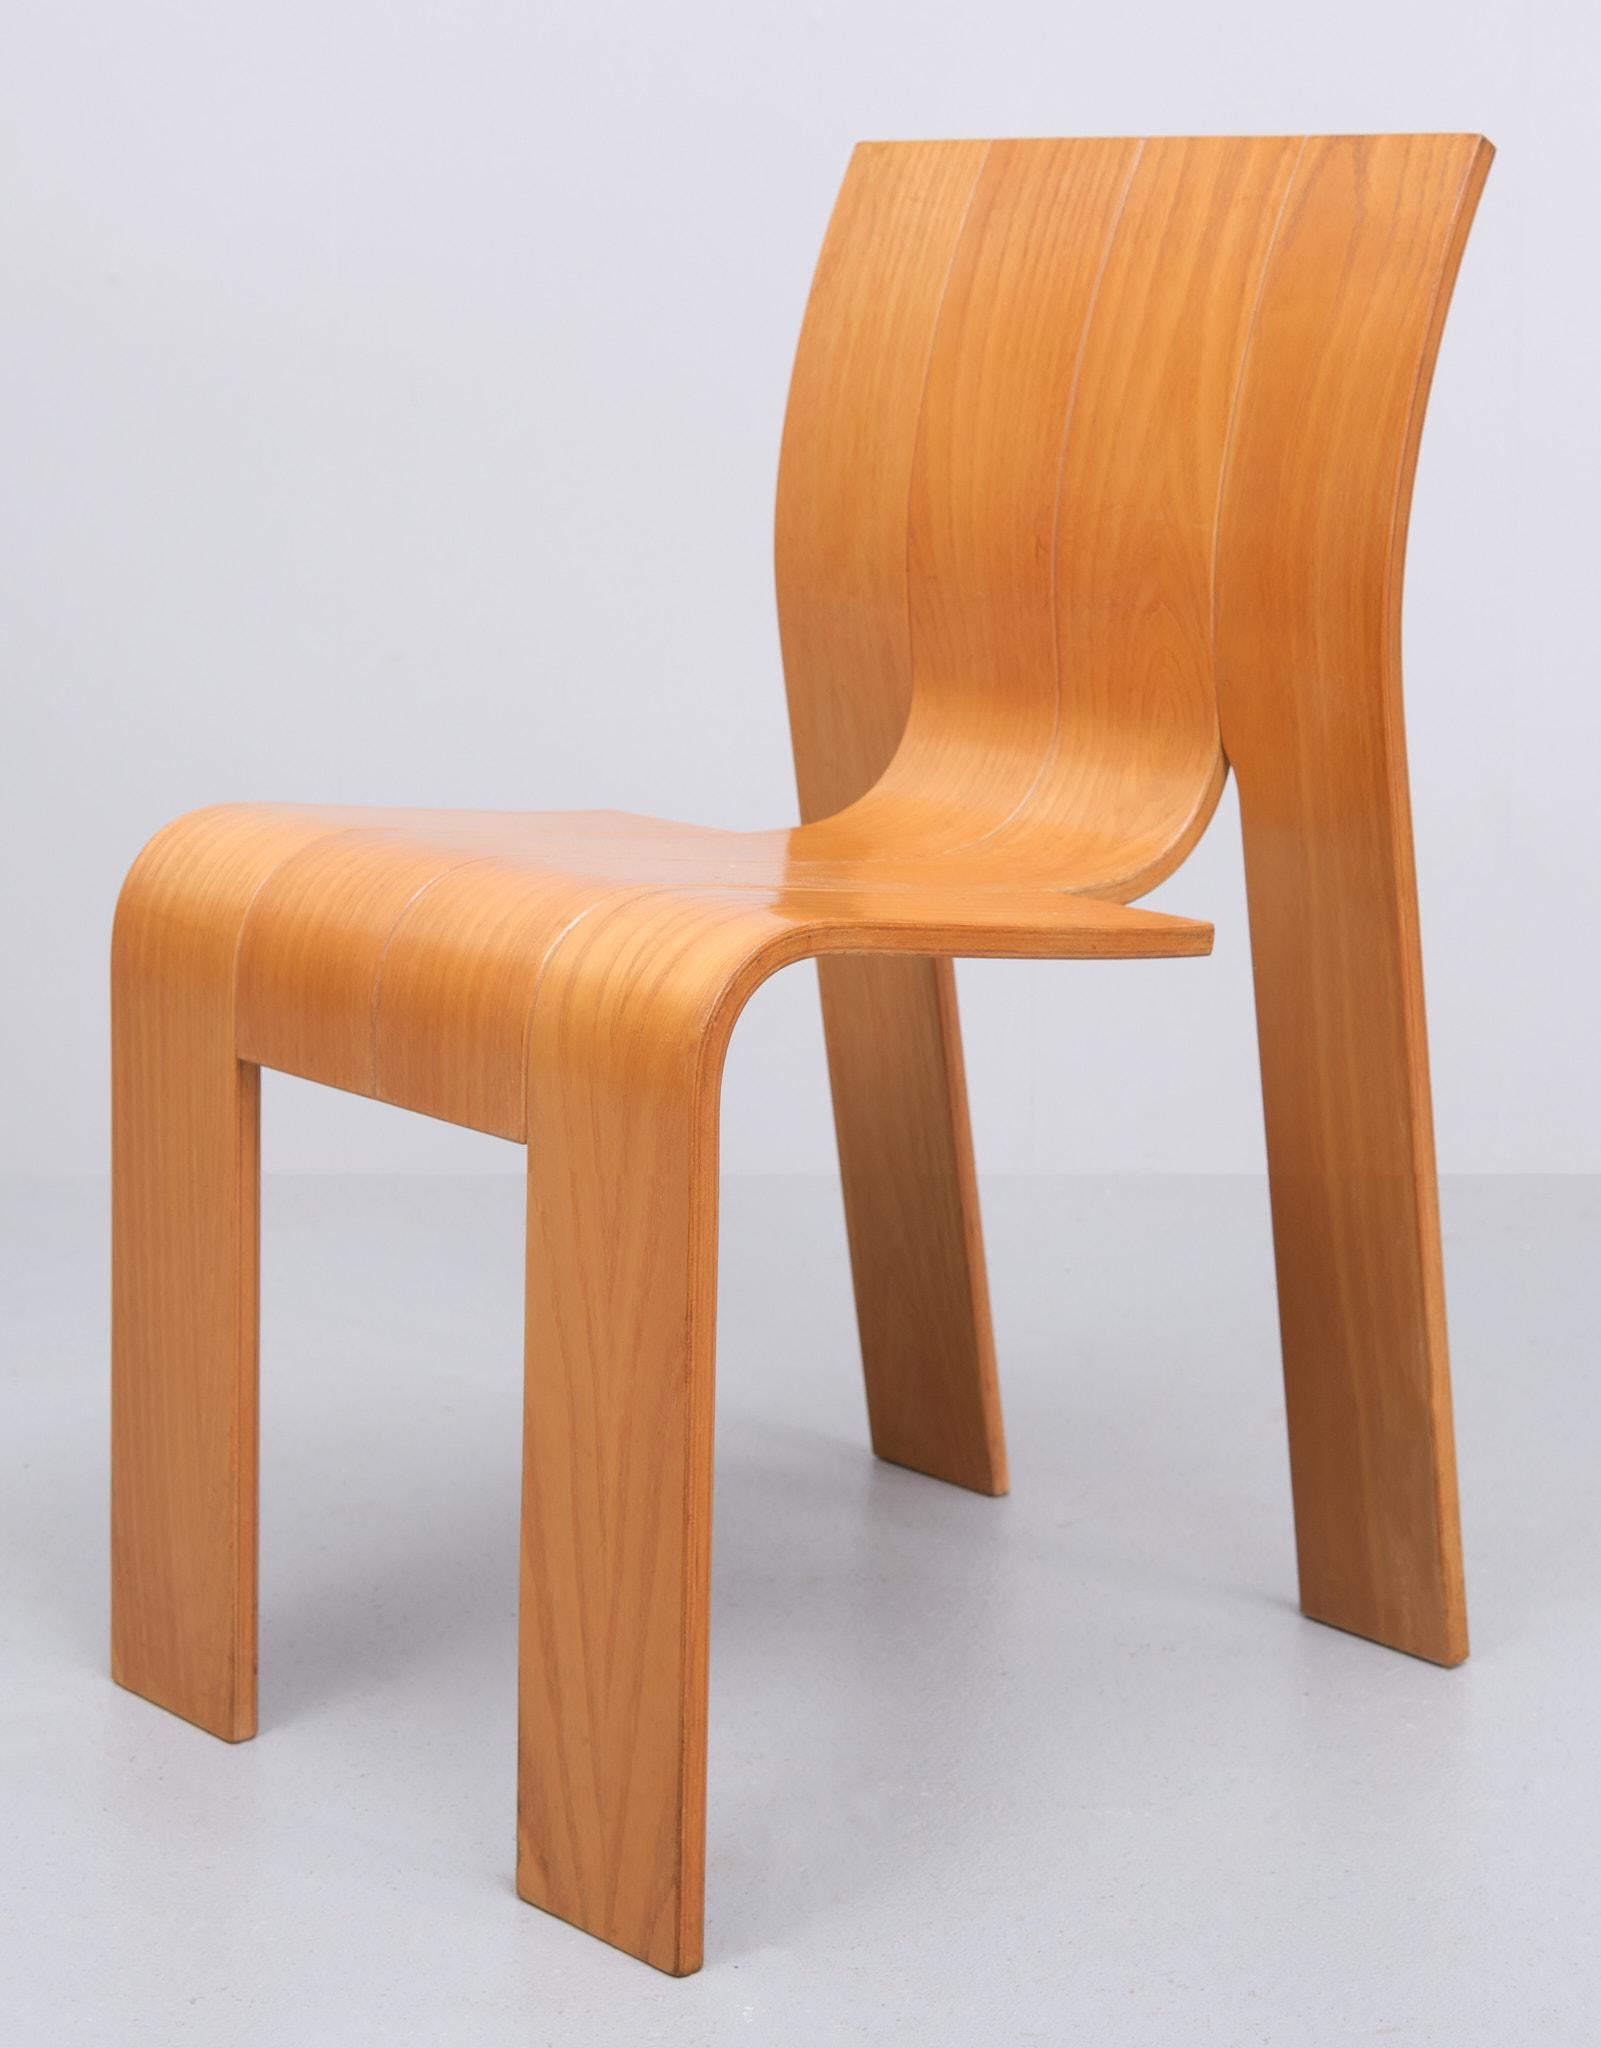 6 Gijs Bakker Strip Chairs 1972 Holland  1